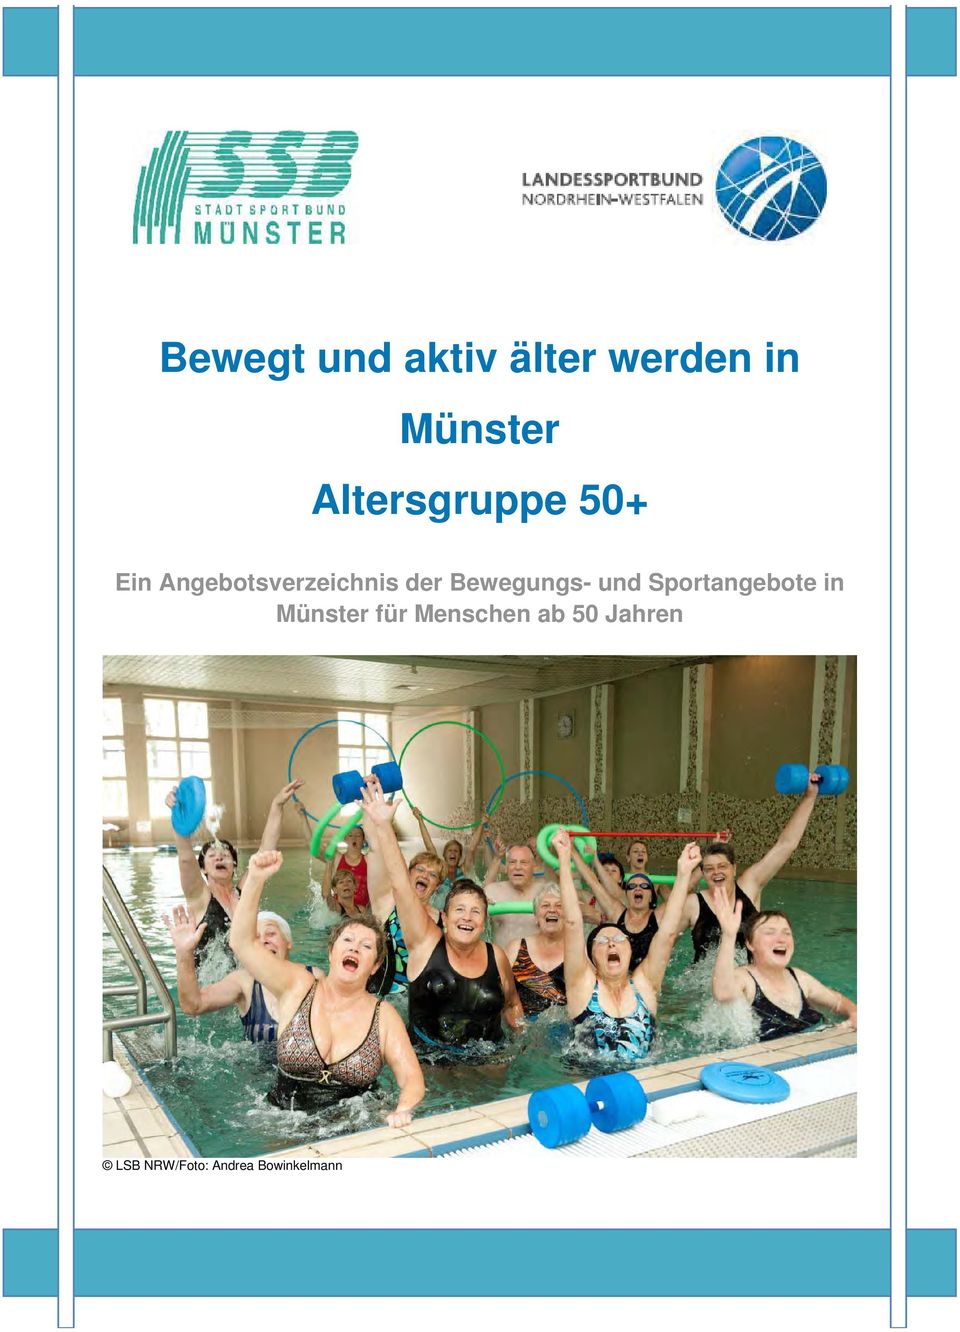 Bewegungs- und Sportangebote in Münster für